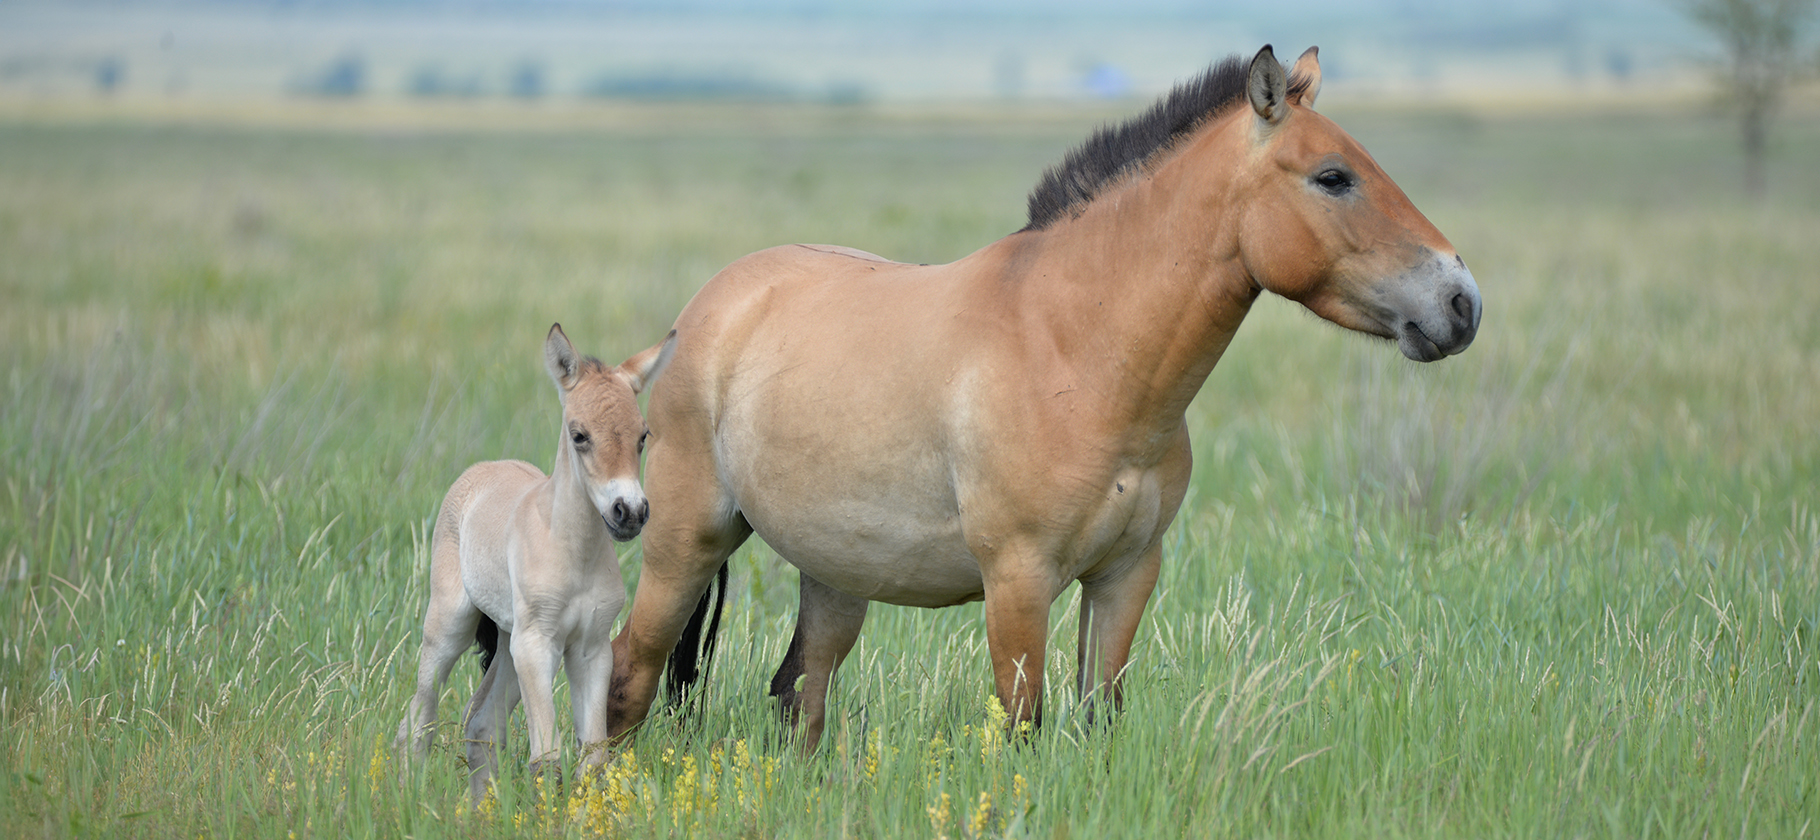 Манулы, сайгаки и лошади Пржевальского: 3 истории тех, кто защищает редких животных